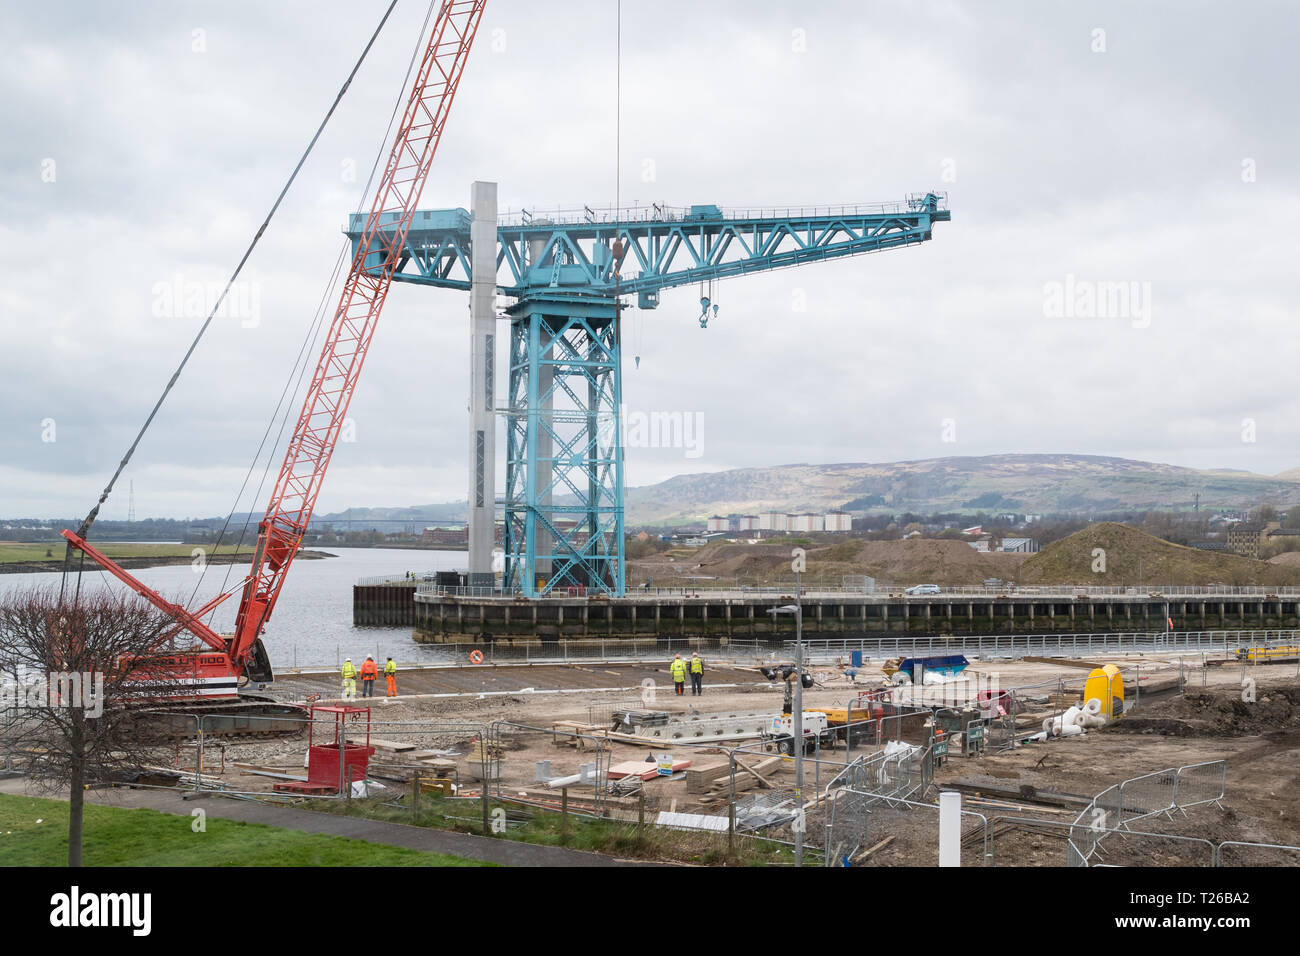 Queen's Quay - ex John Brown's sito cantiere - rigenerazione in corso nel 2019 sotto l'iconica Titan Crane - Glasgow, Scotland, Regno Unito Foto Stock